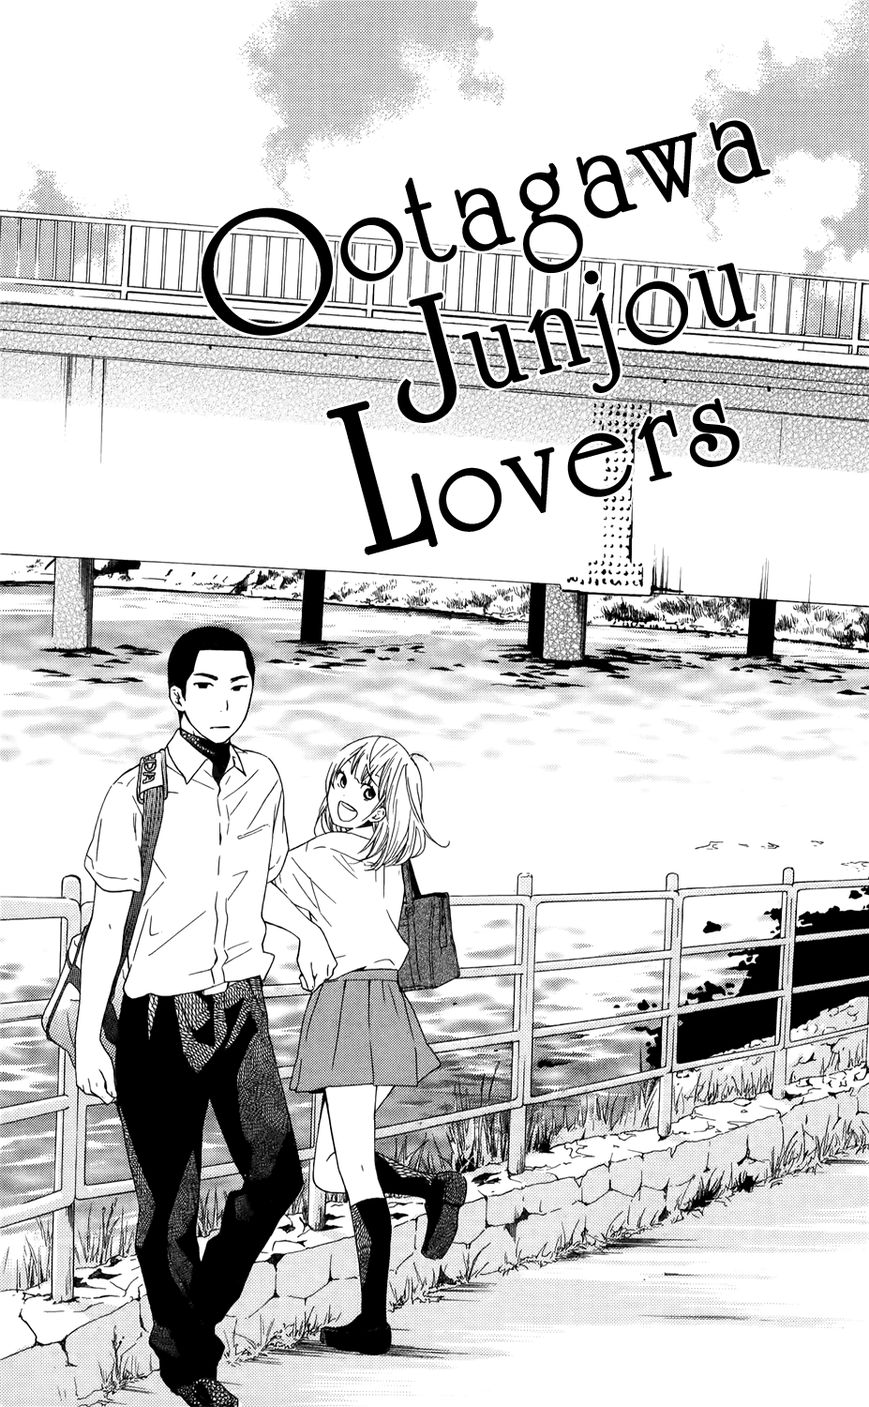 Ootagawa Junjou Lovers 3